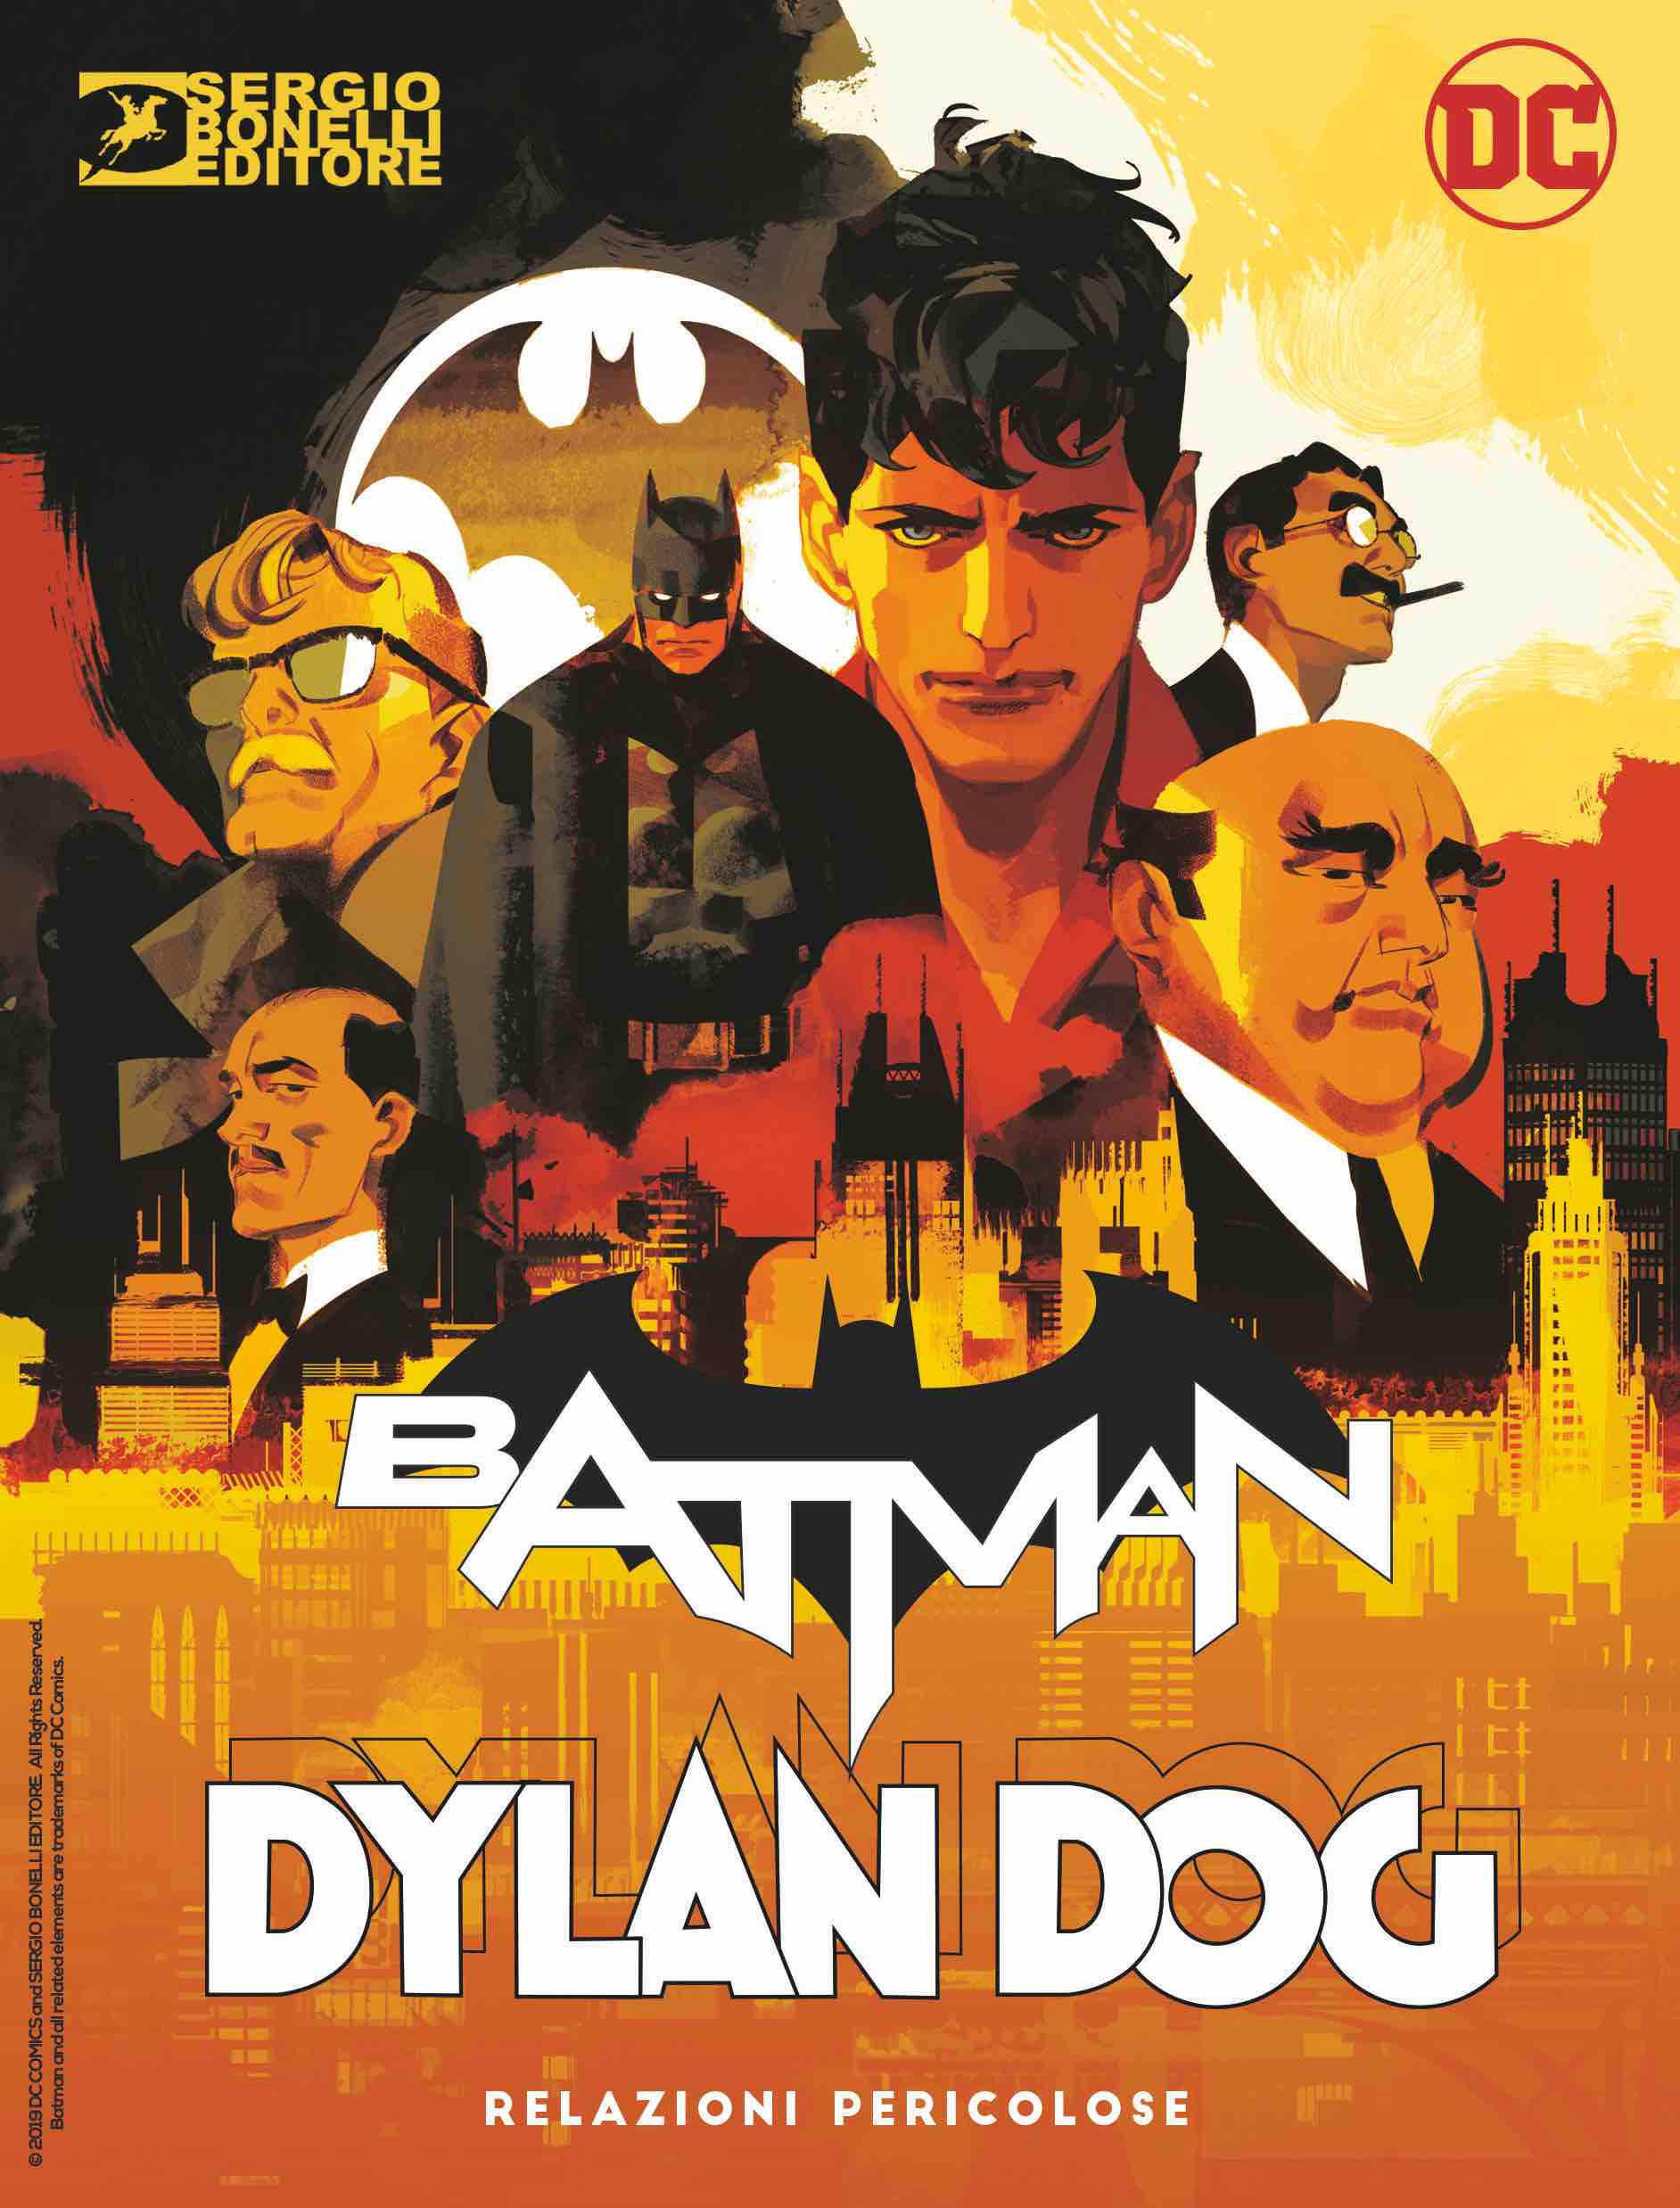 dylan-dog-batman-crossover-sergio-bonelli-editore-dc-comics-rw-edizioni